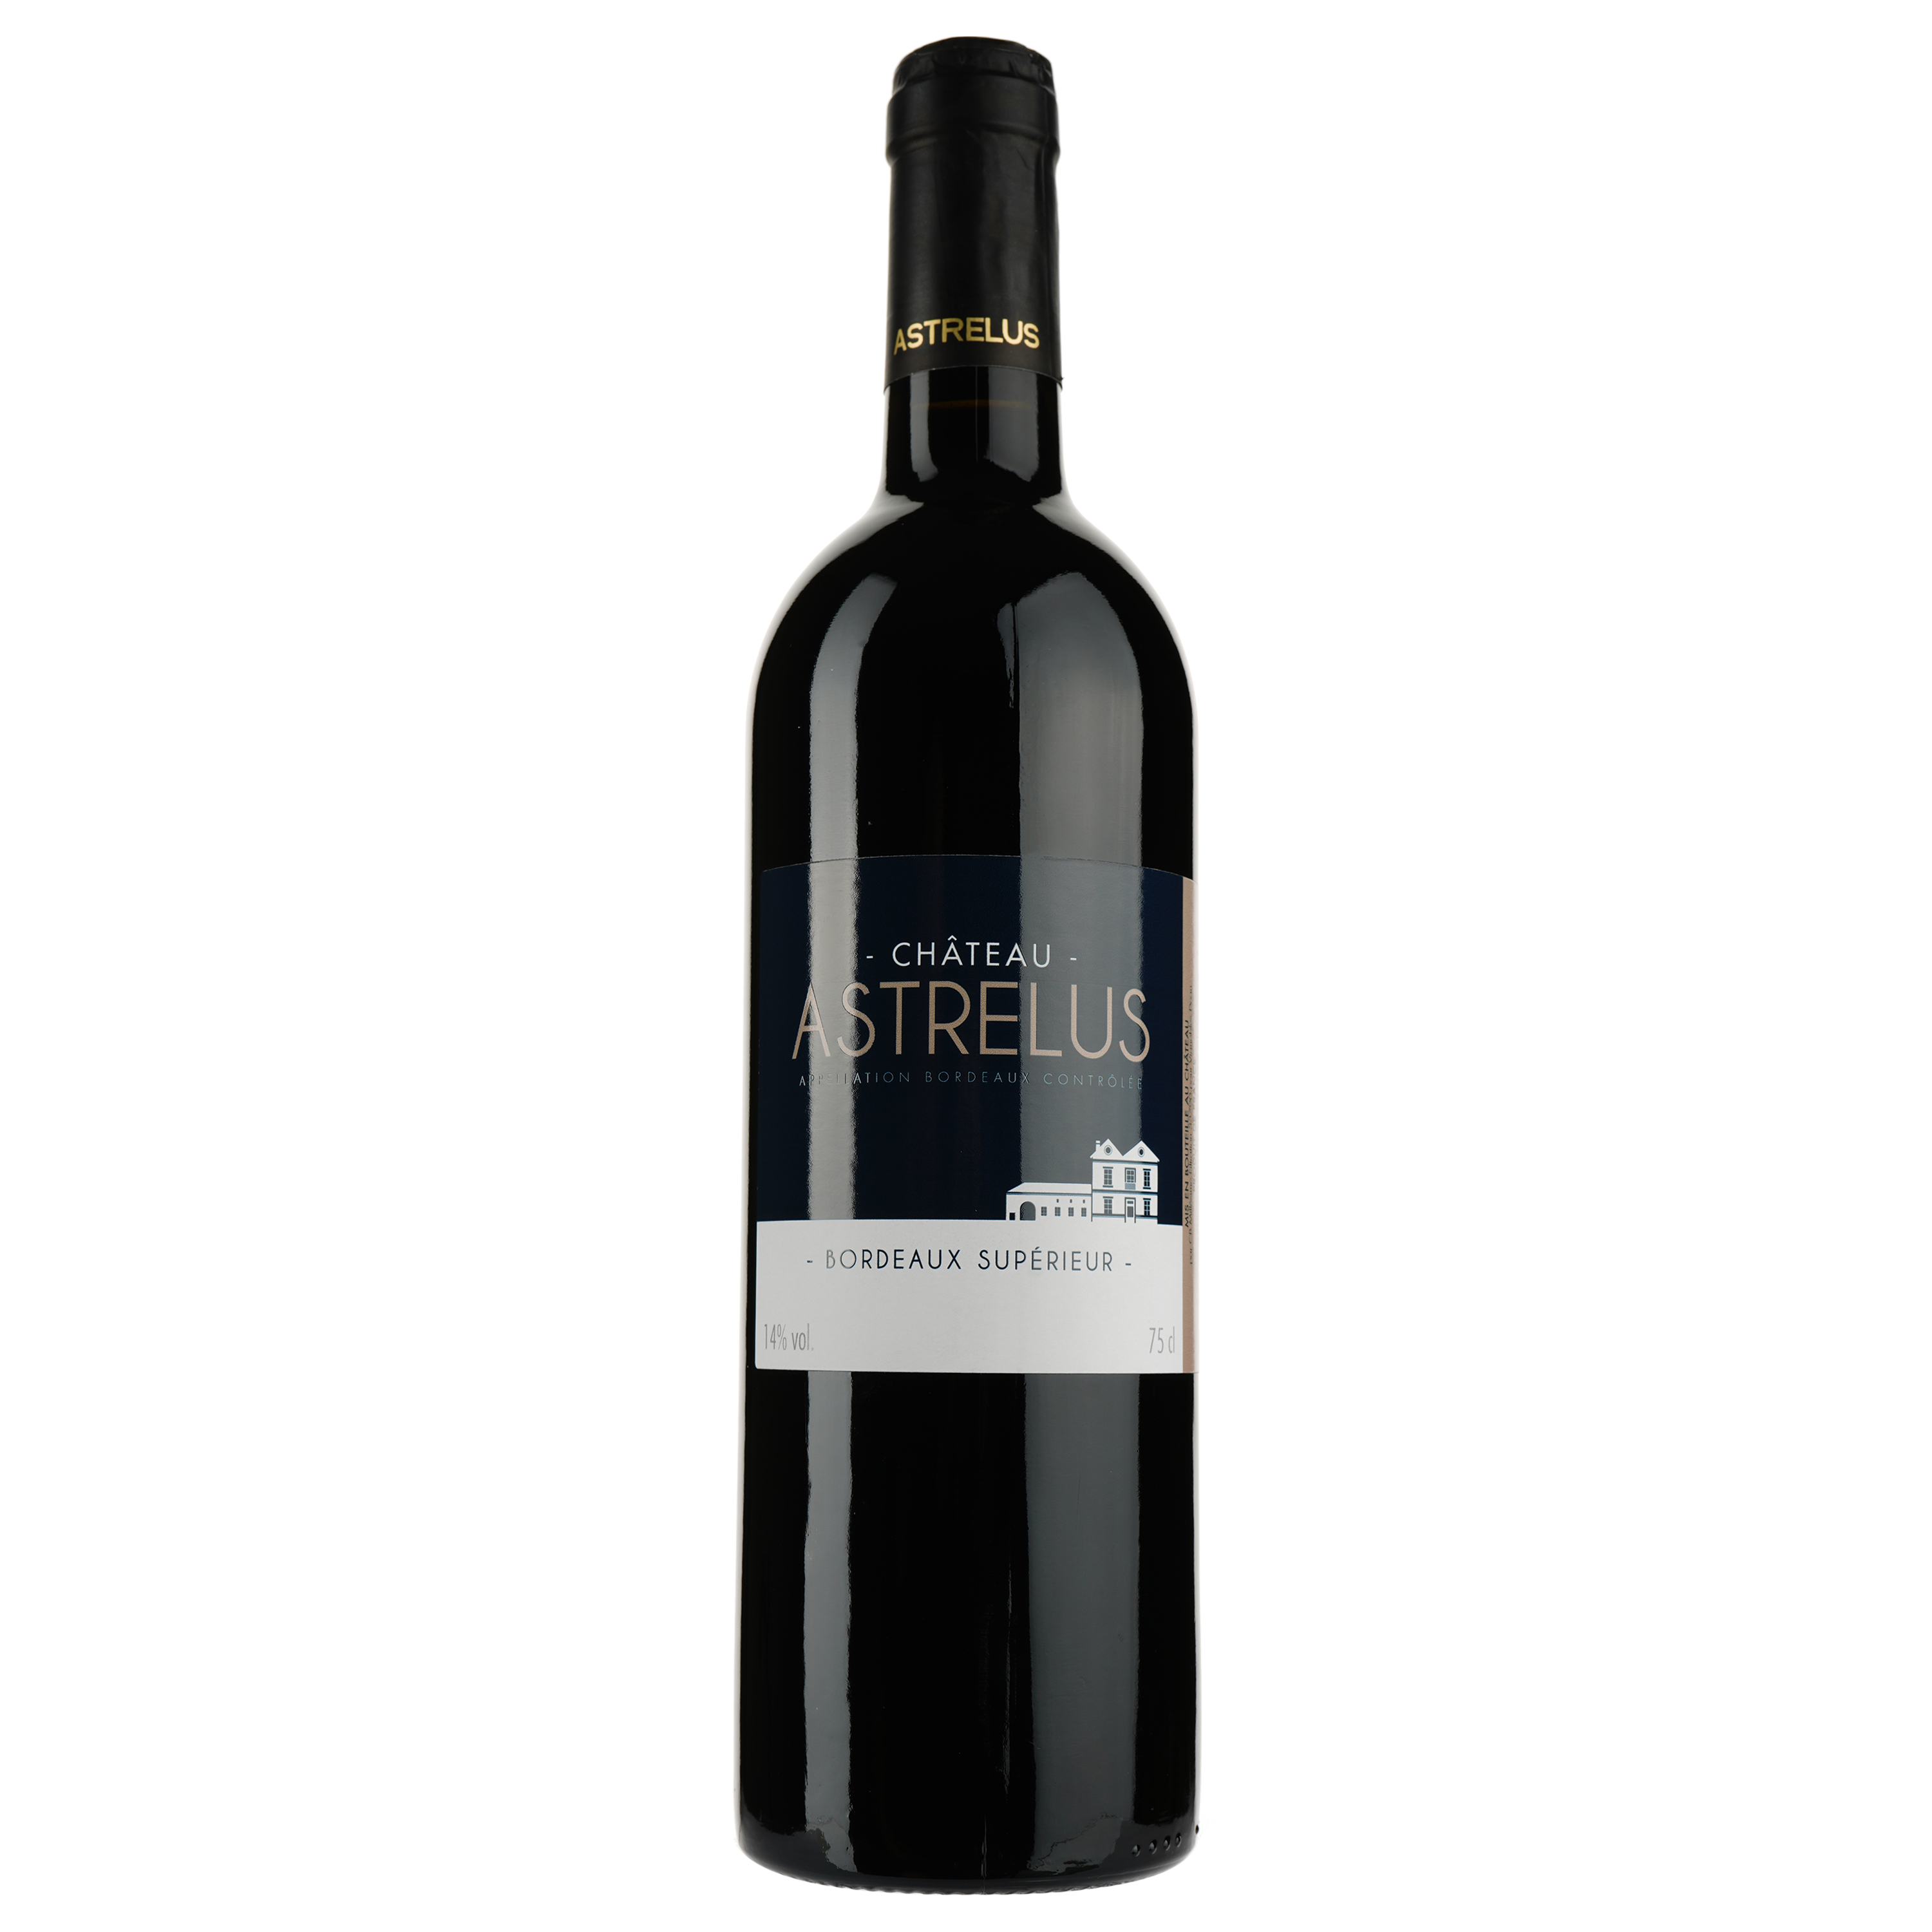 Вино Chateau Astrelus AOP Bordeaux Superieur 2016, красное, сухое, 0,75 л - фото 1